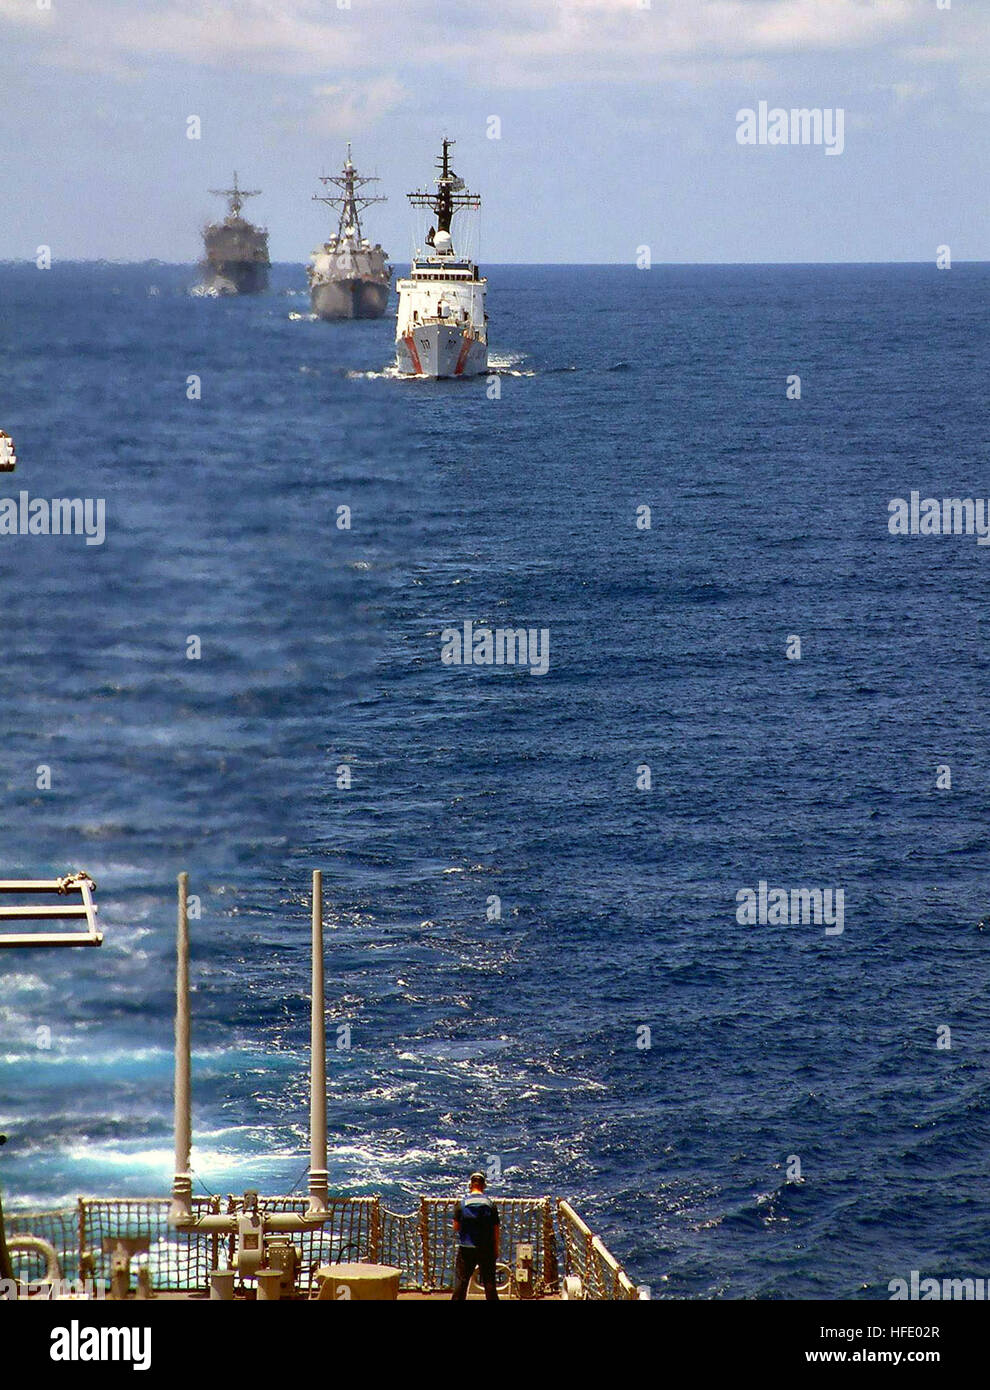 040527-N-4104L-006 sul Mare del Sud della Cina (27 maggio 2003) - STATI UNITI Coast Guard Hamilton-class cutter Mellon (WHEC 717), il missile destroyer USS McCampbell (DDG 85) e dock anfibio sbarco nave USS Fort McHenry (LSD 43) vapore insieme come parte di esercitare la cooperazione a galla la prontezza e la formazione (Carati) 2004 gruppo di attività. Recuperare la nave USS Salvor (ARS 52) completano il gruppo di attività, lo svolgimento di esercizi in tutto il sud-est asiatico durante i mesi estivi. Stati Uniti Navy foto di Chief giornalista Melinda Larson (rilasciato) Navy US 040527-N-4104L-006 U.S. Coast Guard Hamilton-class cutter Foto Stock